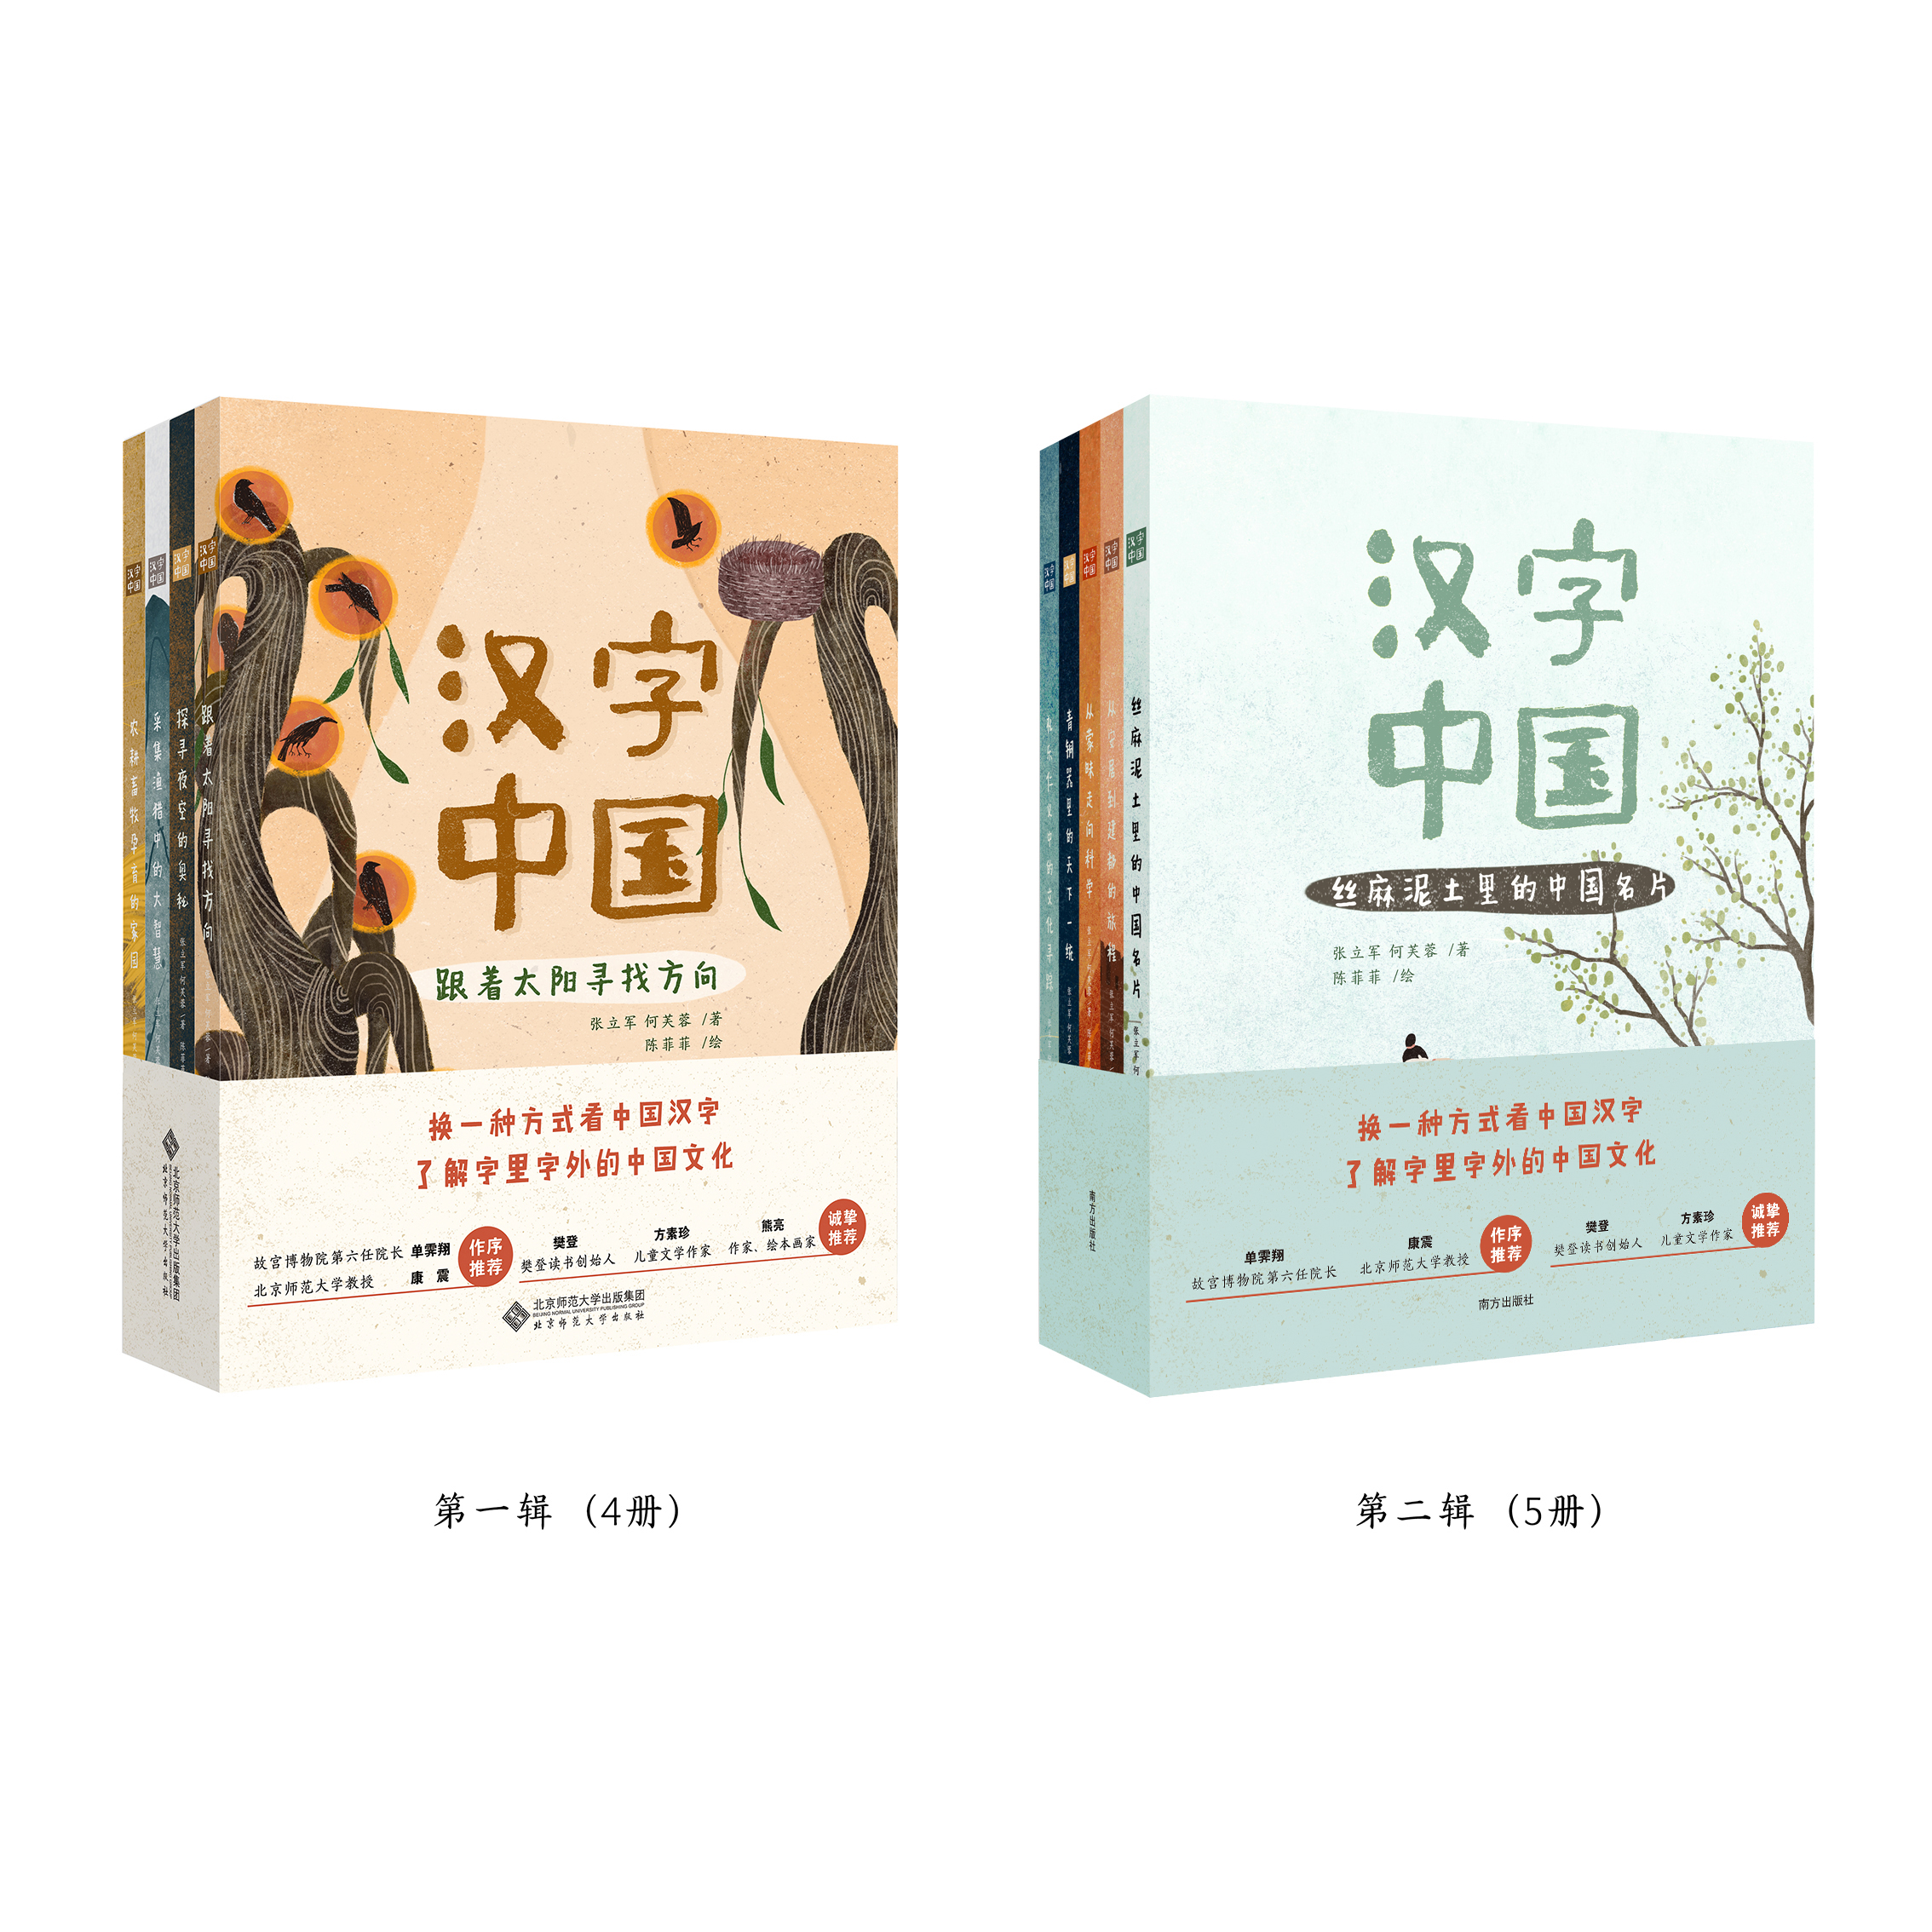 《汉字中国》九册终于集齐了！老少皆宜，一套可以把脑子叫醒的汉字书，给孩子和成人看得懂的中国文化